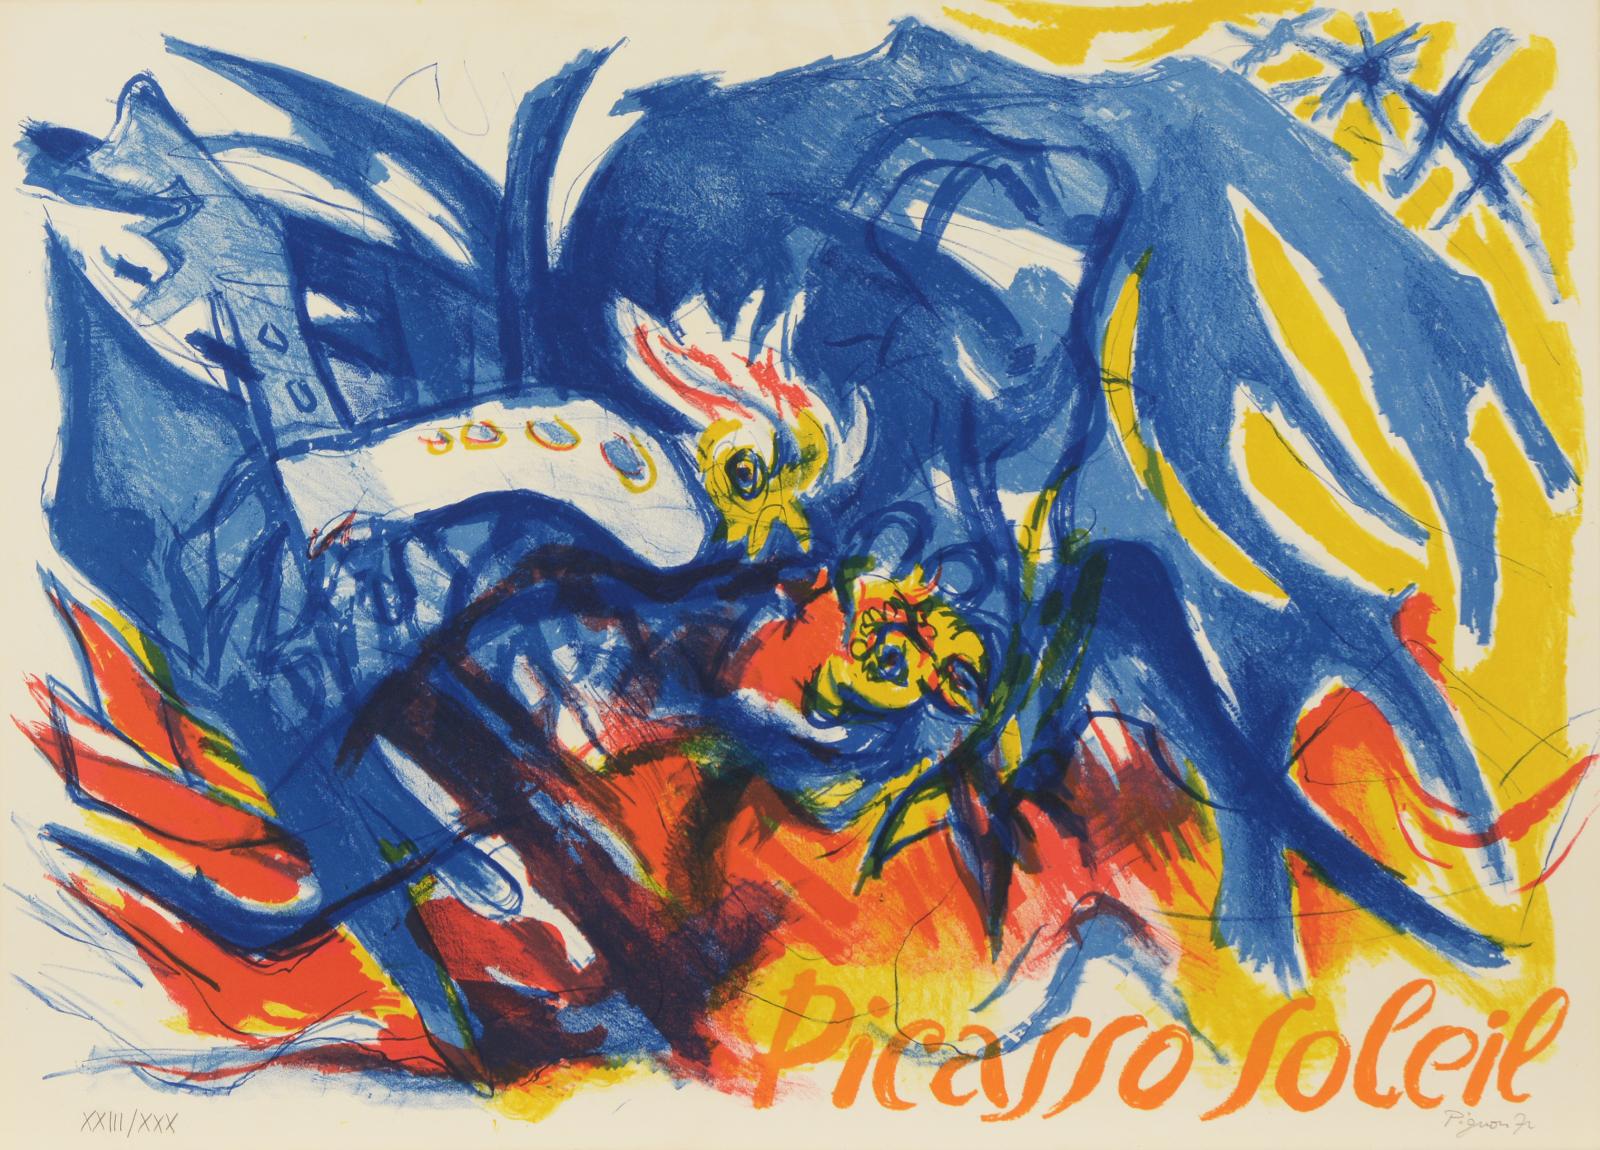 Edouard Pignon - Picasso soleil, 61206-40, Van Ham Kunstauktionen